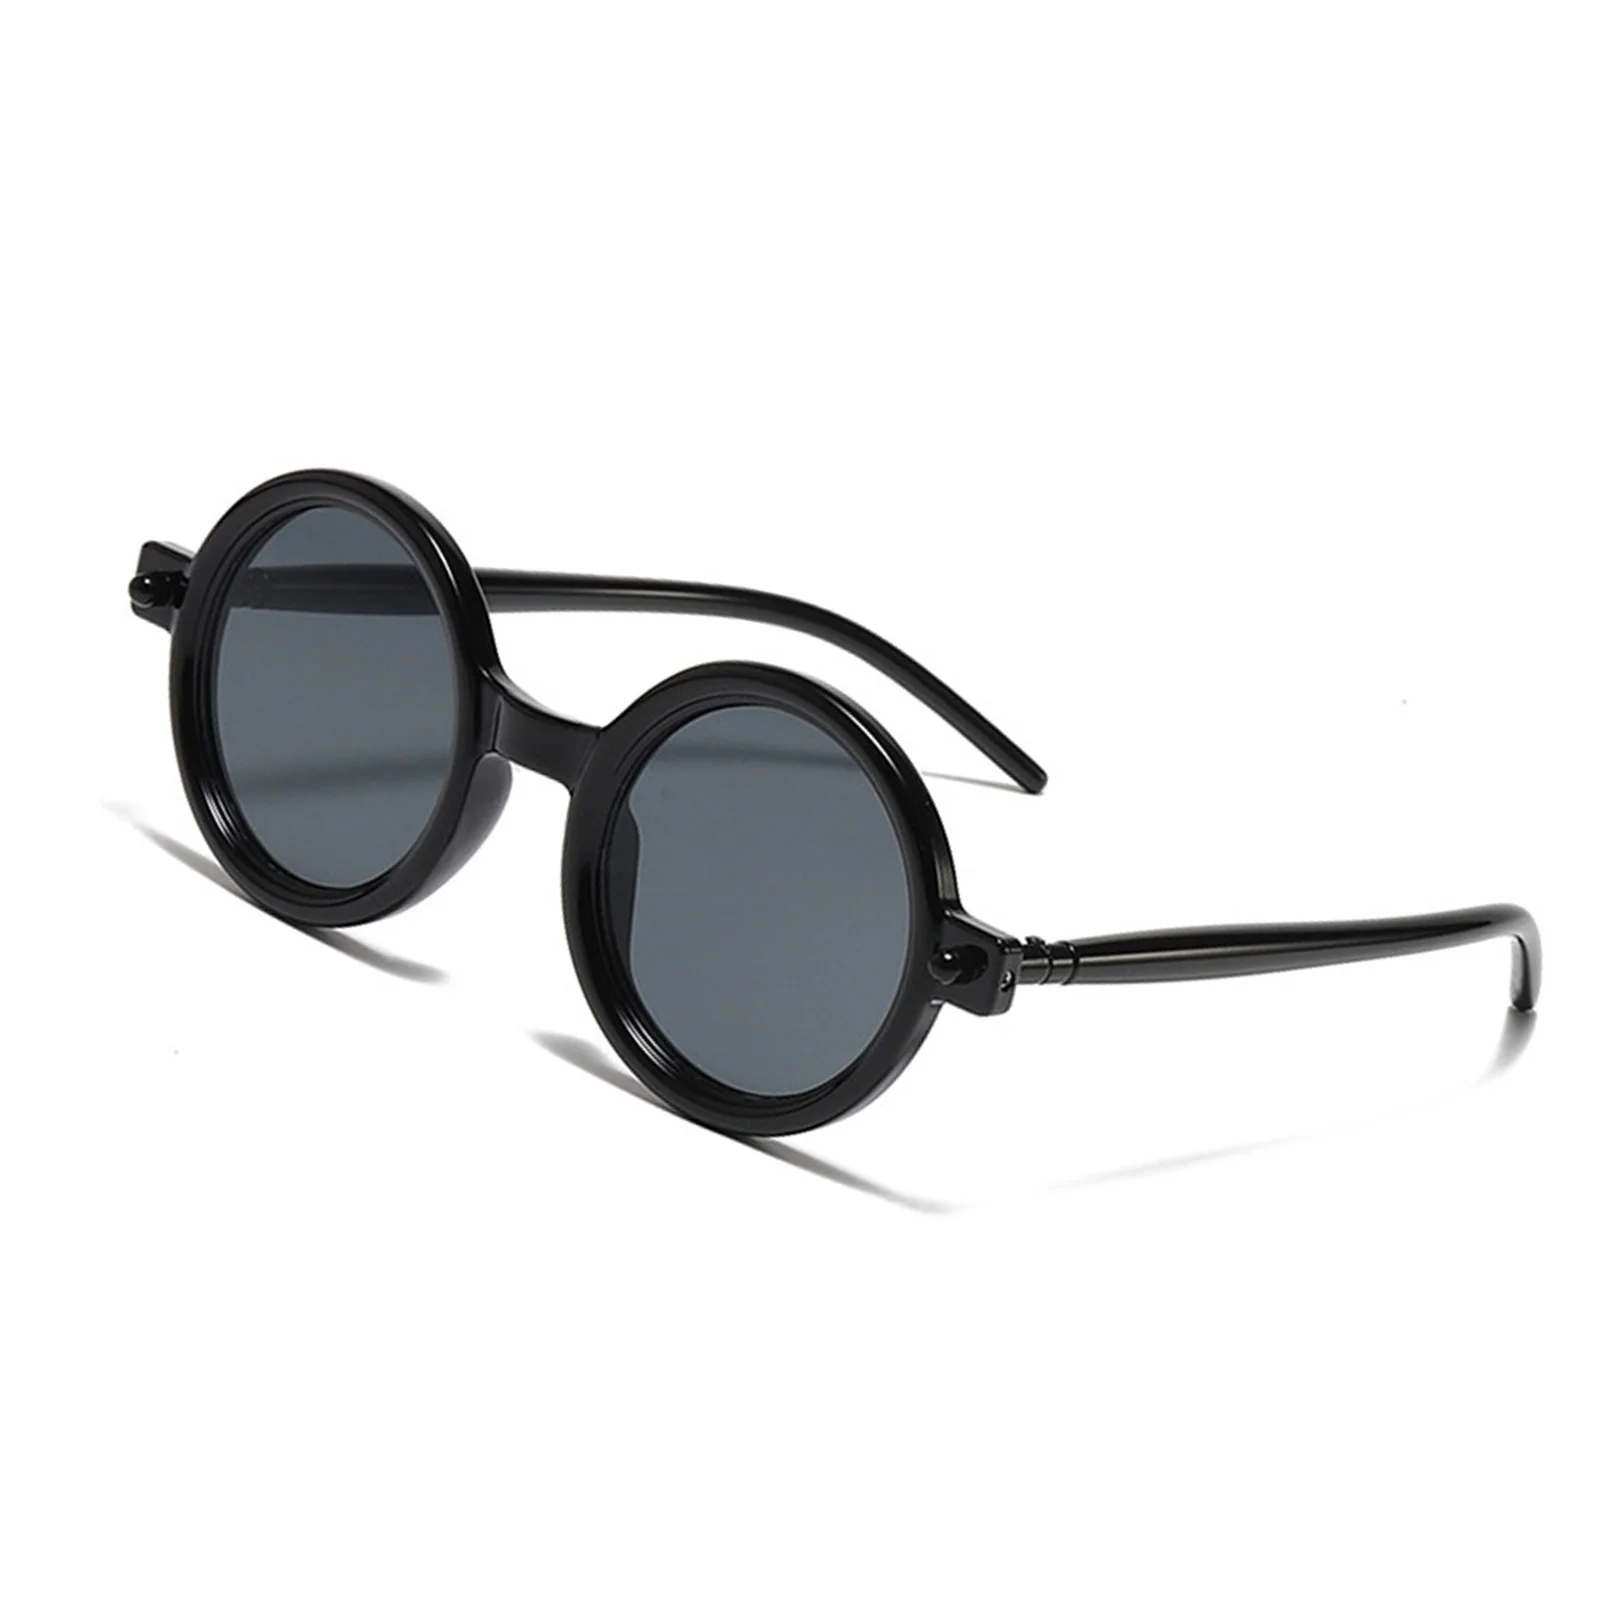 Модные солнцезащитные очки для уличной съемки в маленькой круглой оправе с прозрачными линзами, декоративные солнцезащитные очки для отдыха, повседневной носки, вождения автомобиля